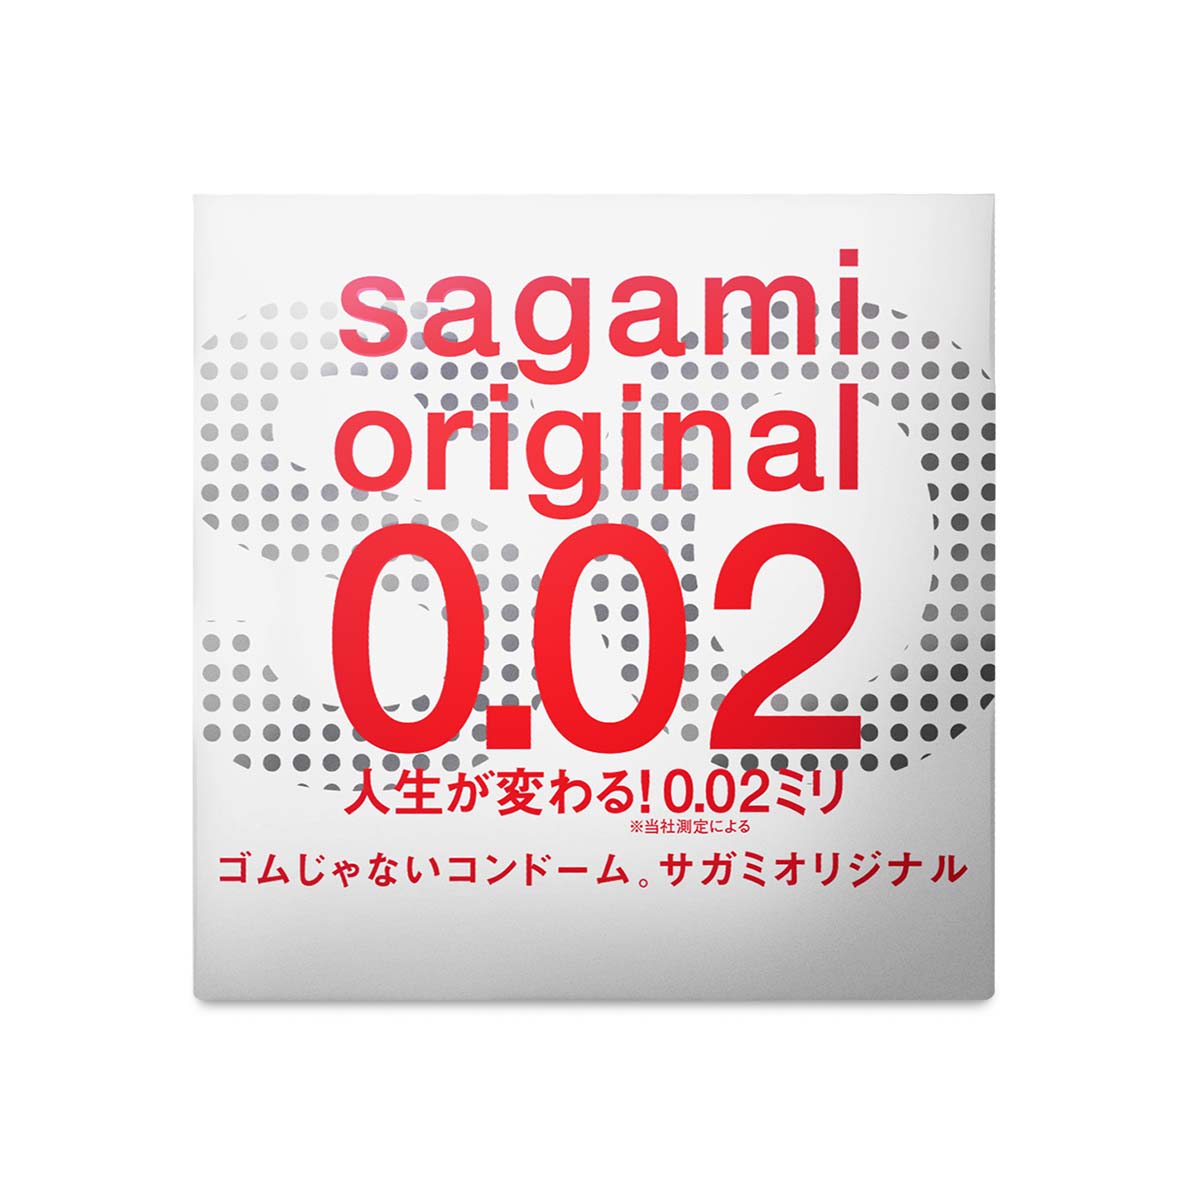 Sagami Original 0.02 1's Pack